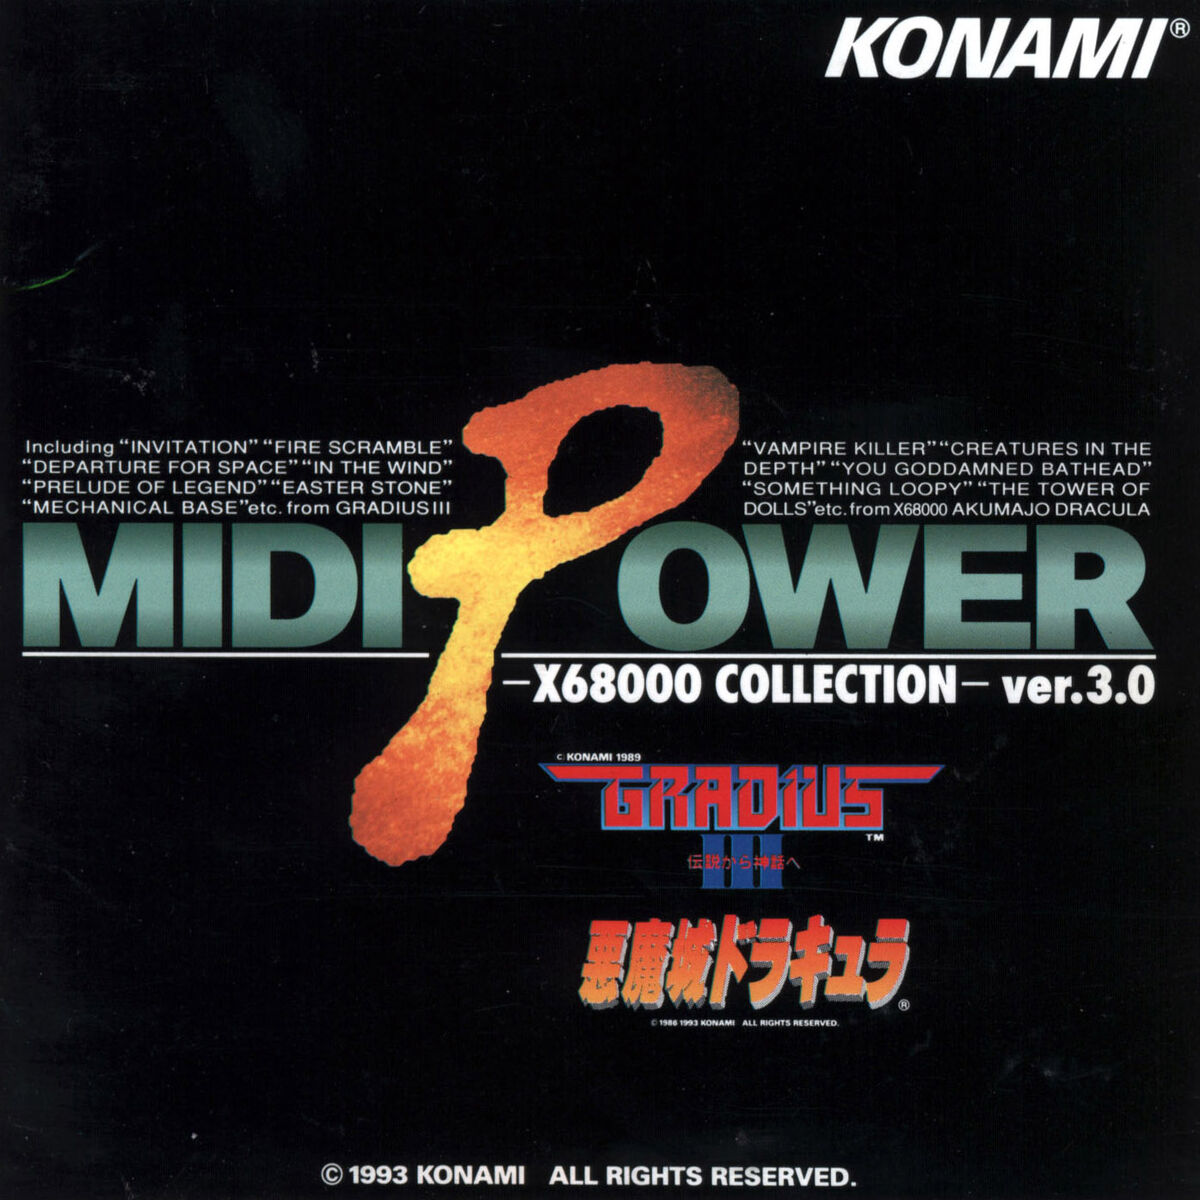 MIDI Power –X68000 Collection– ver.3.0 | Castlevania Wiki | Fandom